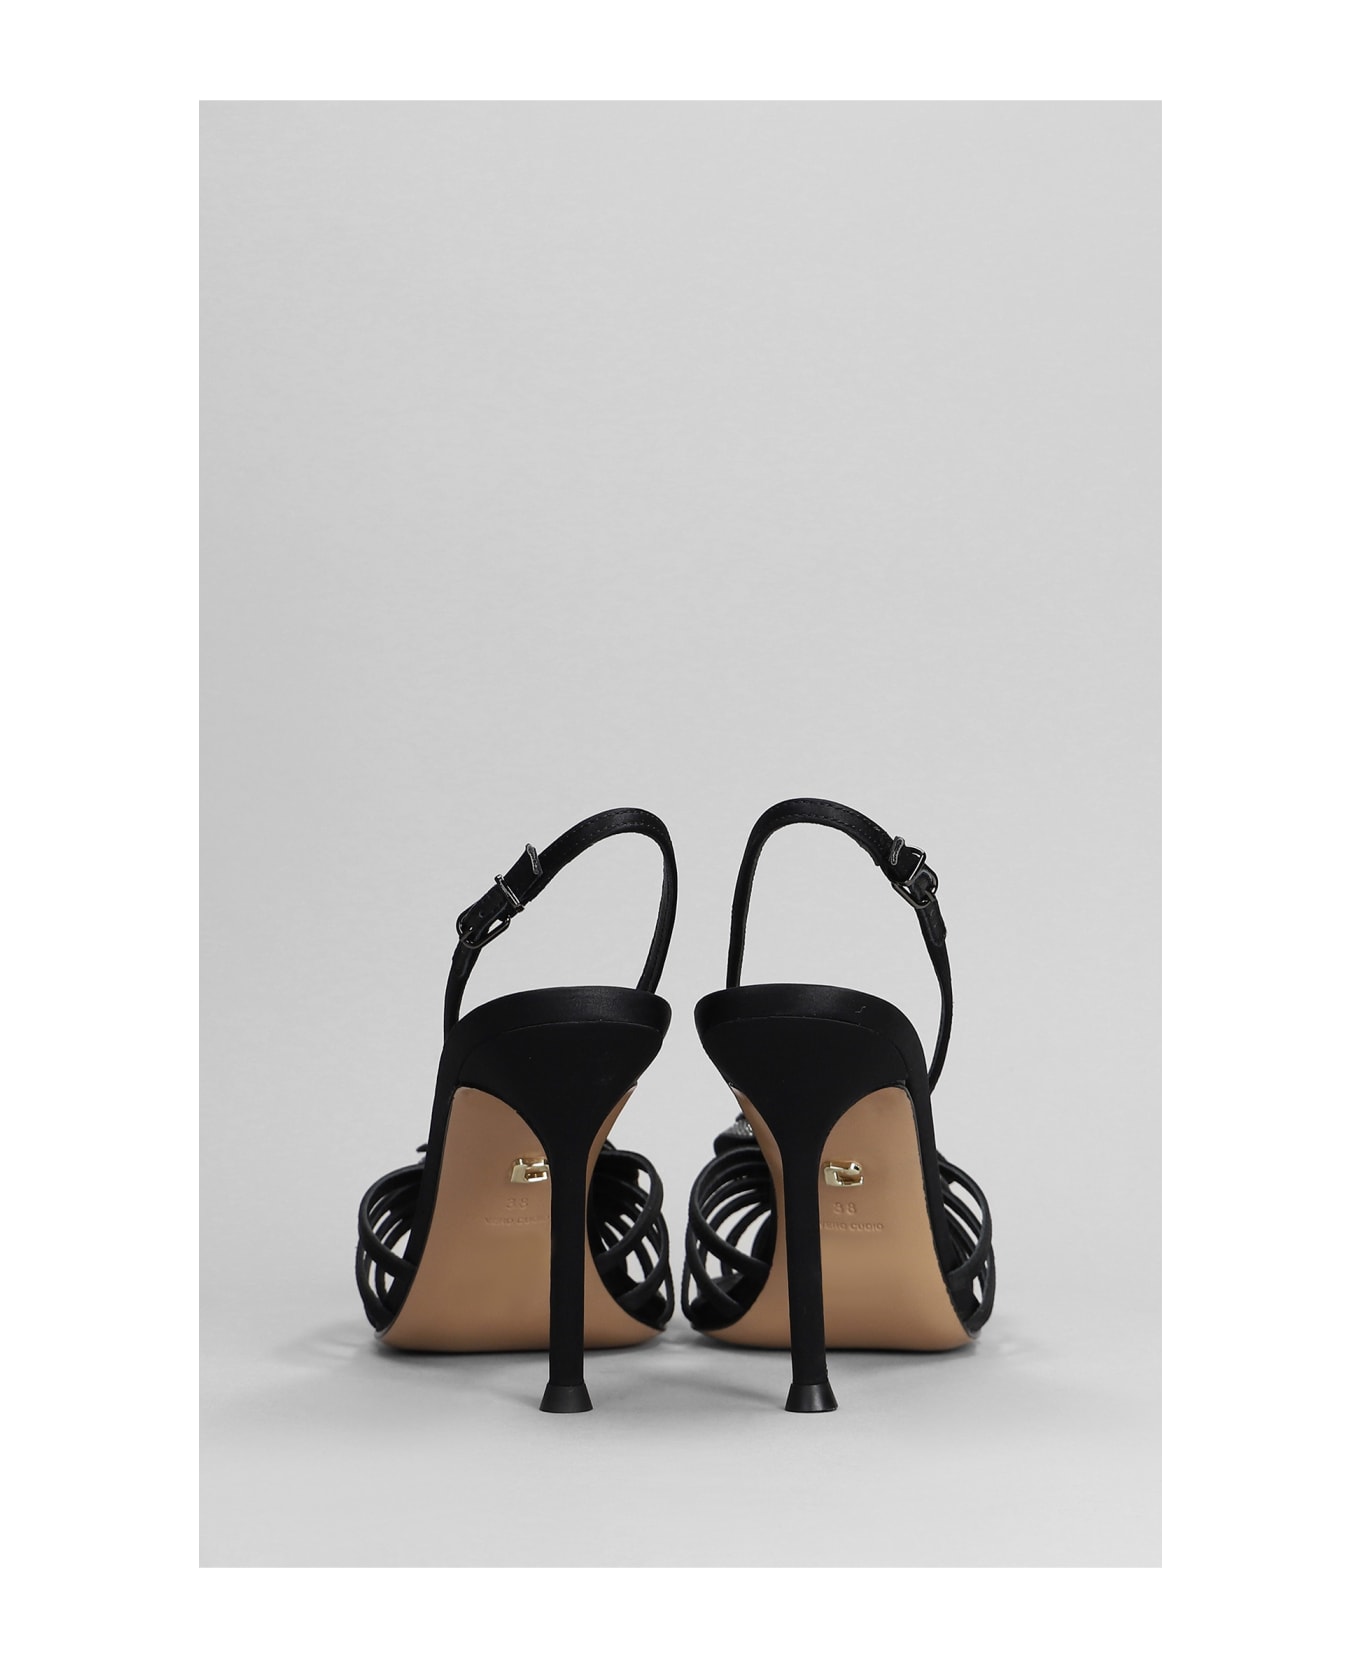 Lola Cruz Rose 95 Sandals In Black Satin - black